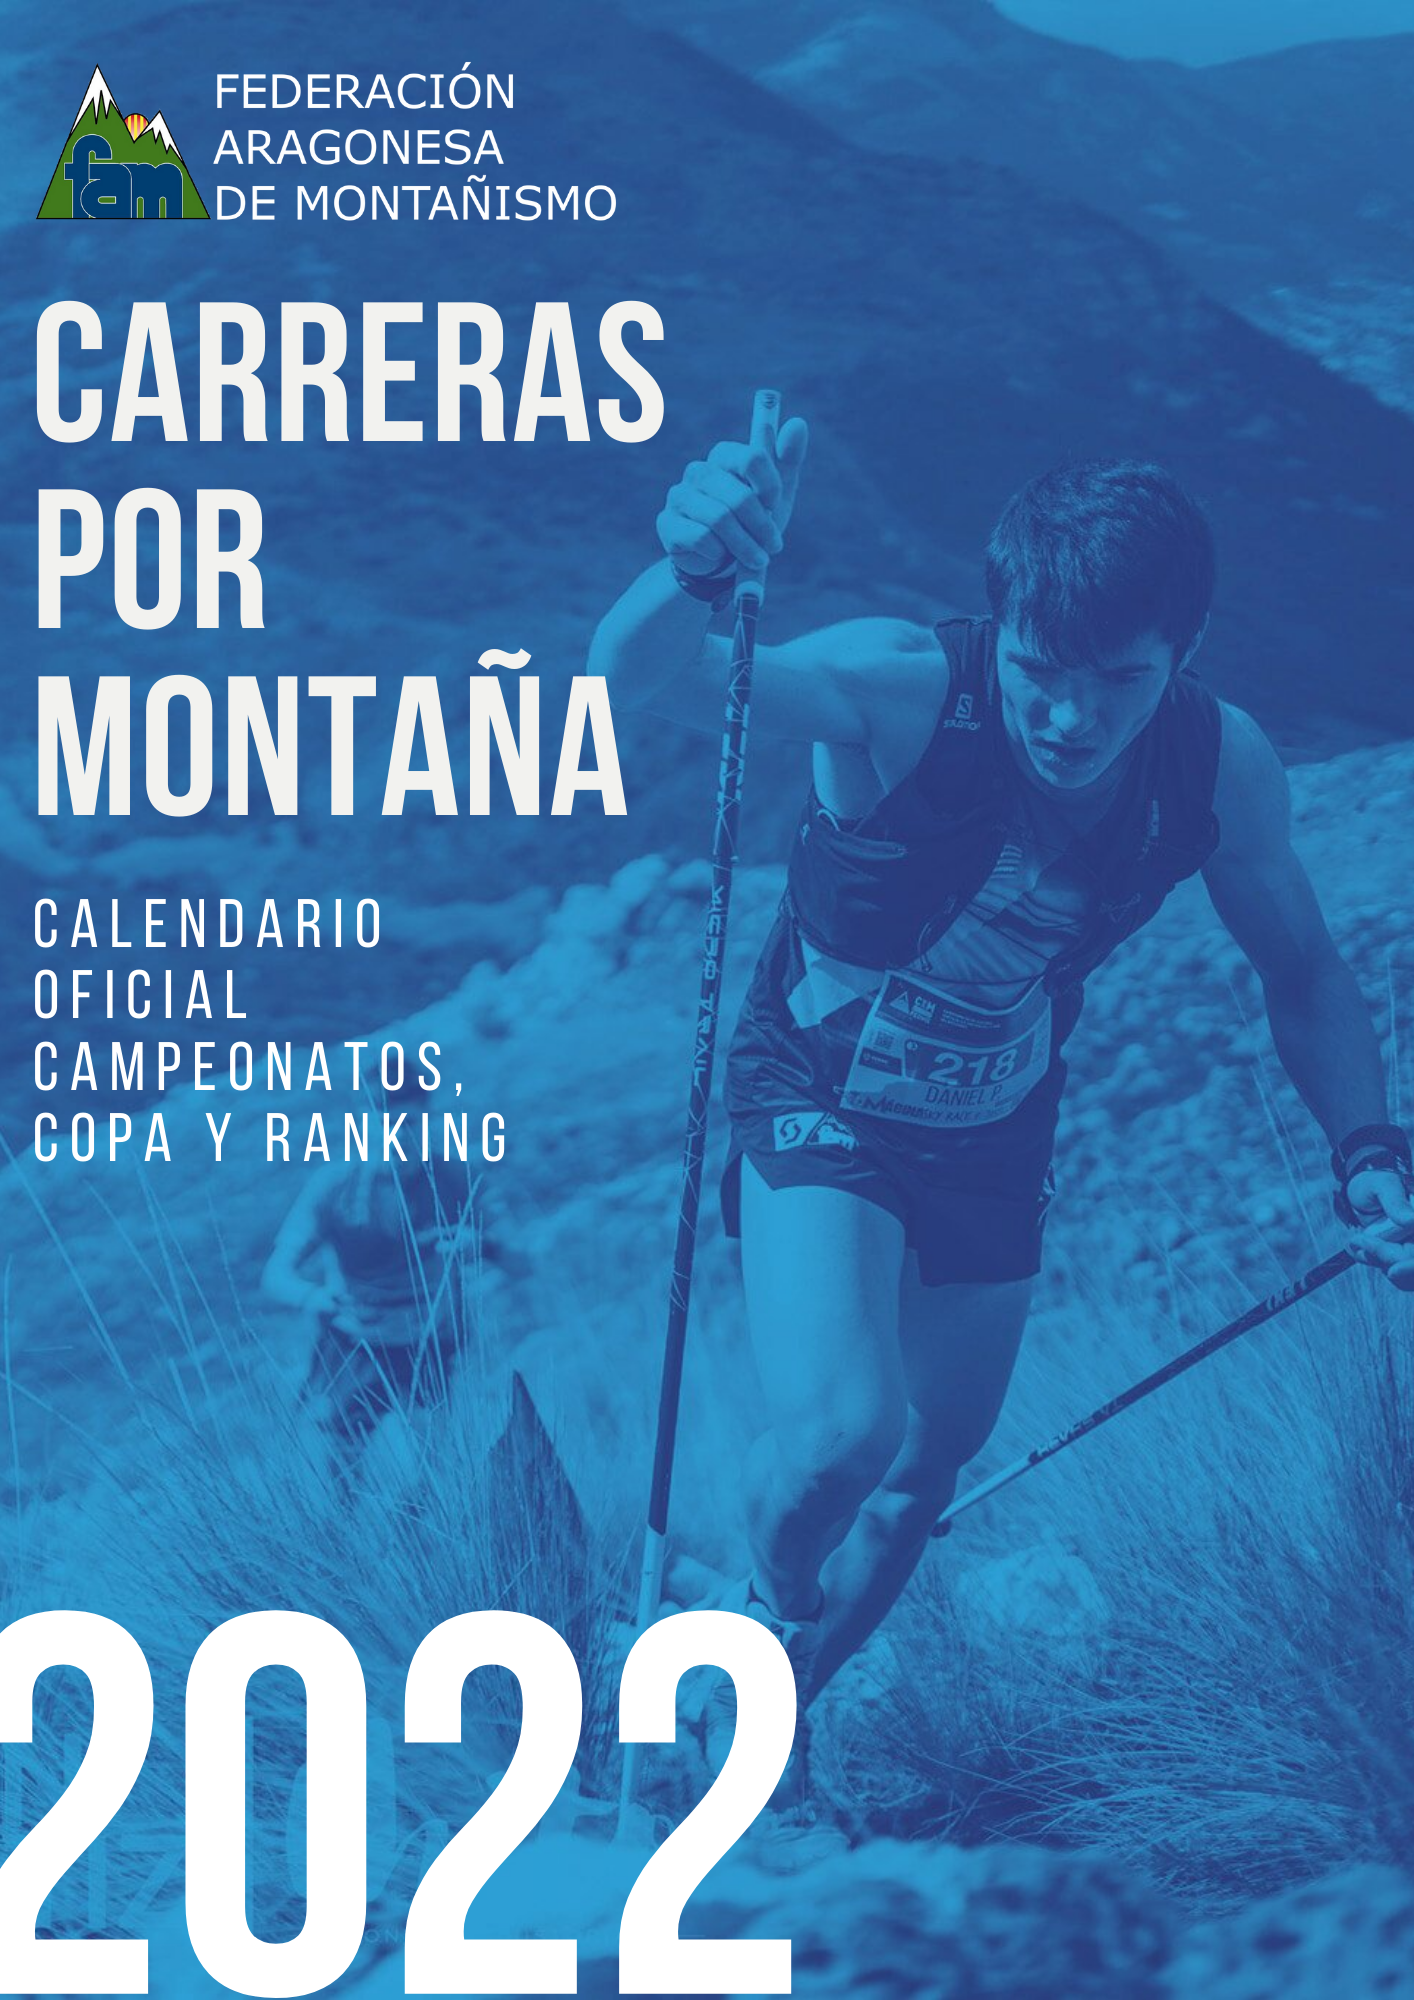 Calendario competición oficial Carreras por Montaña